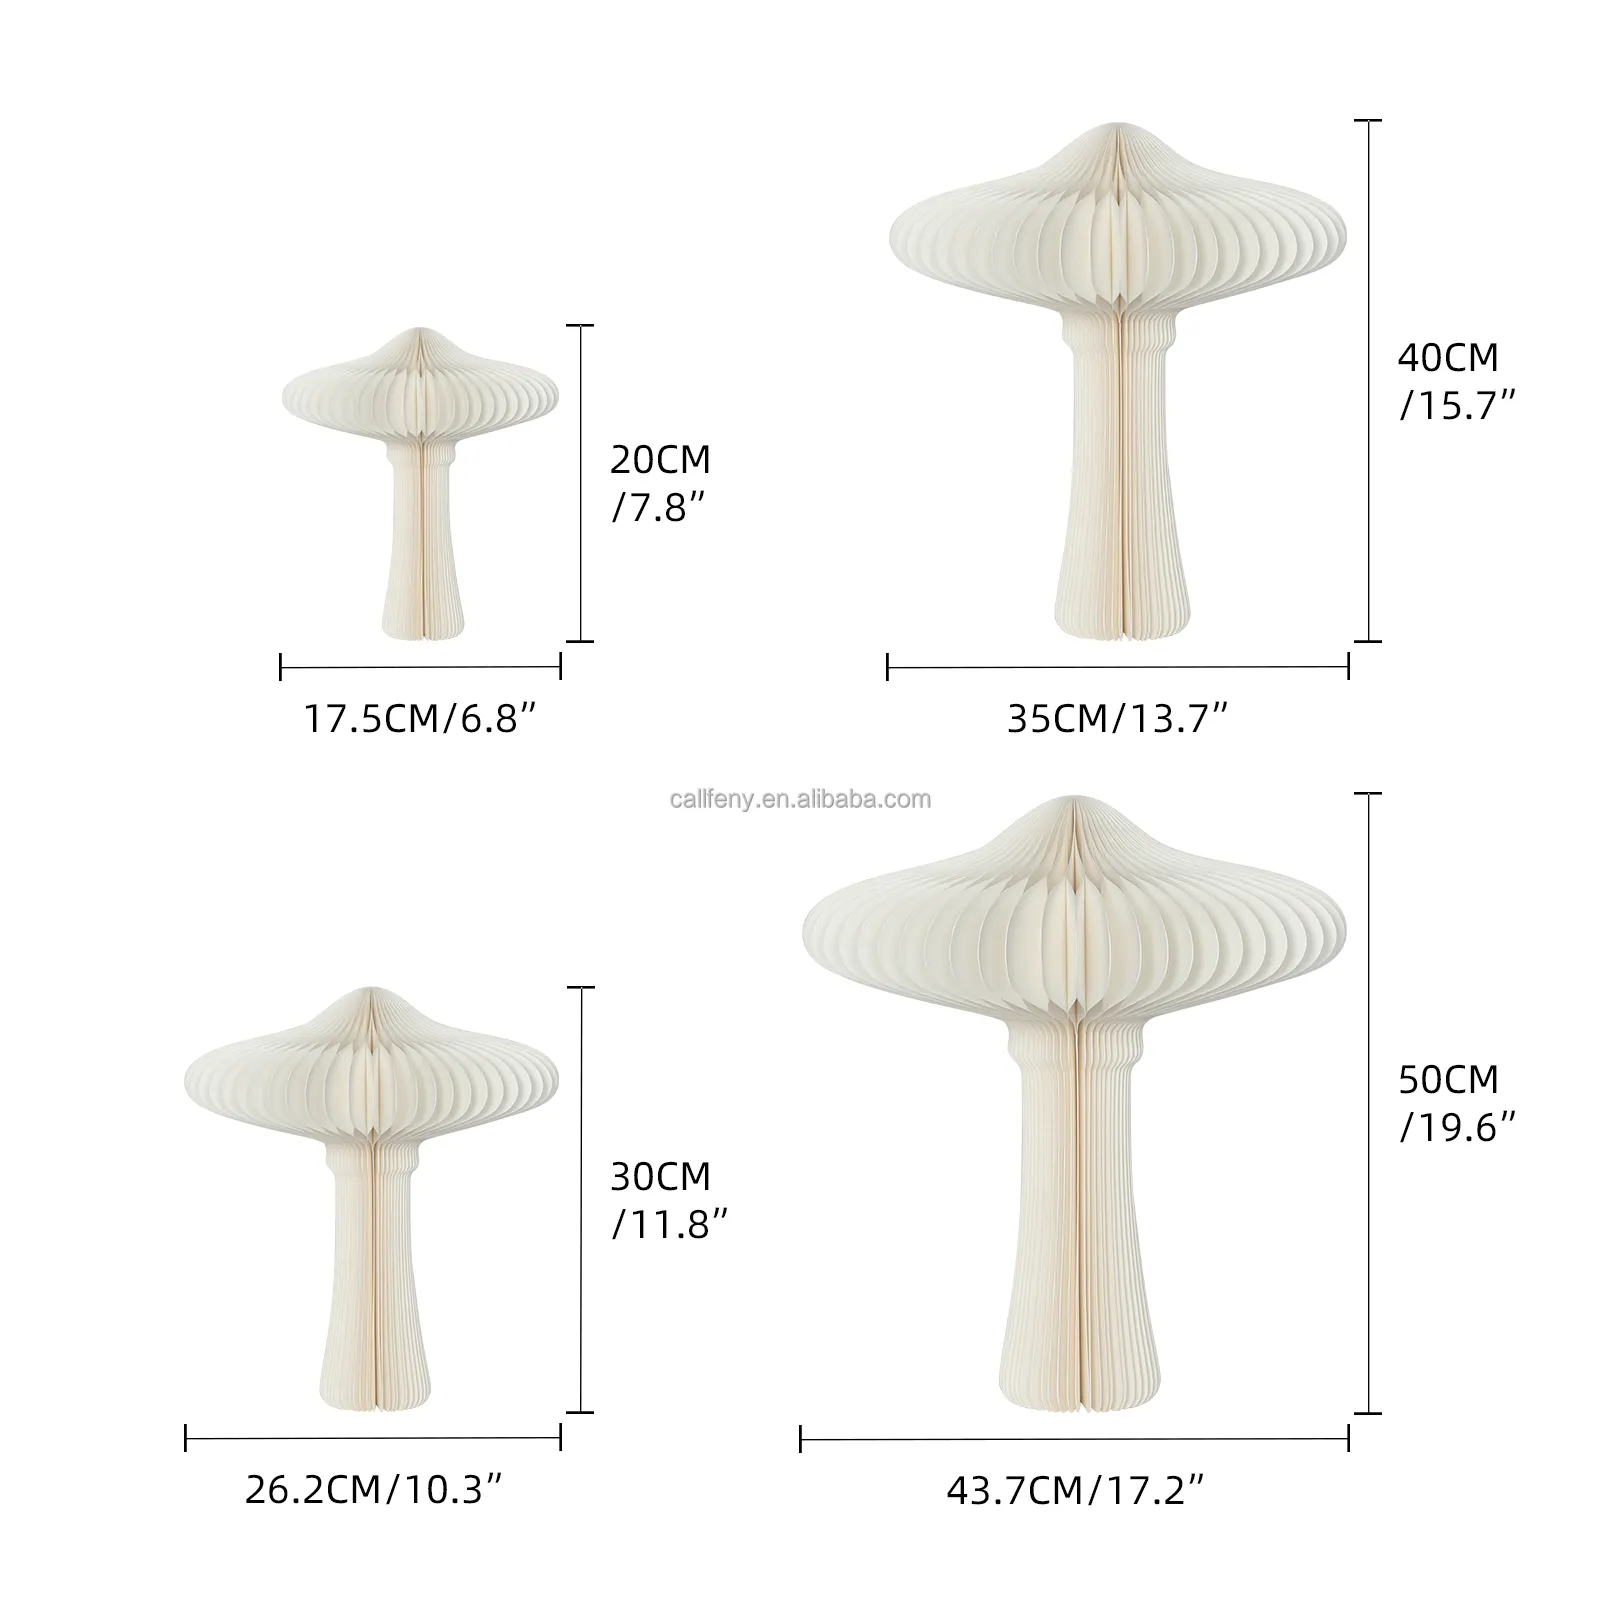 Décoration champignon ornements de vacances en papier vitrine accessoires décoratifs personnalisés pour la maison